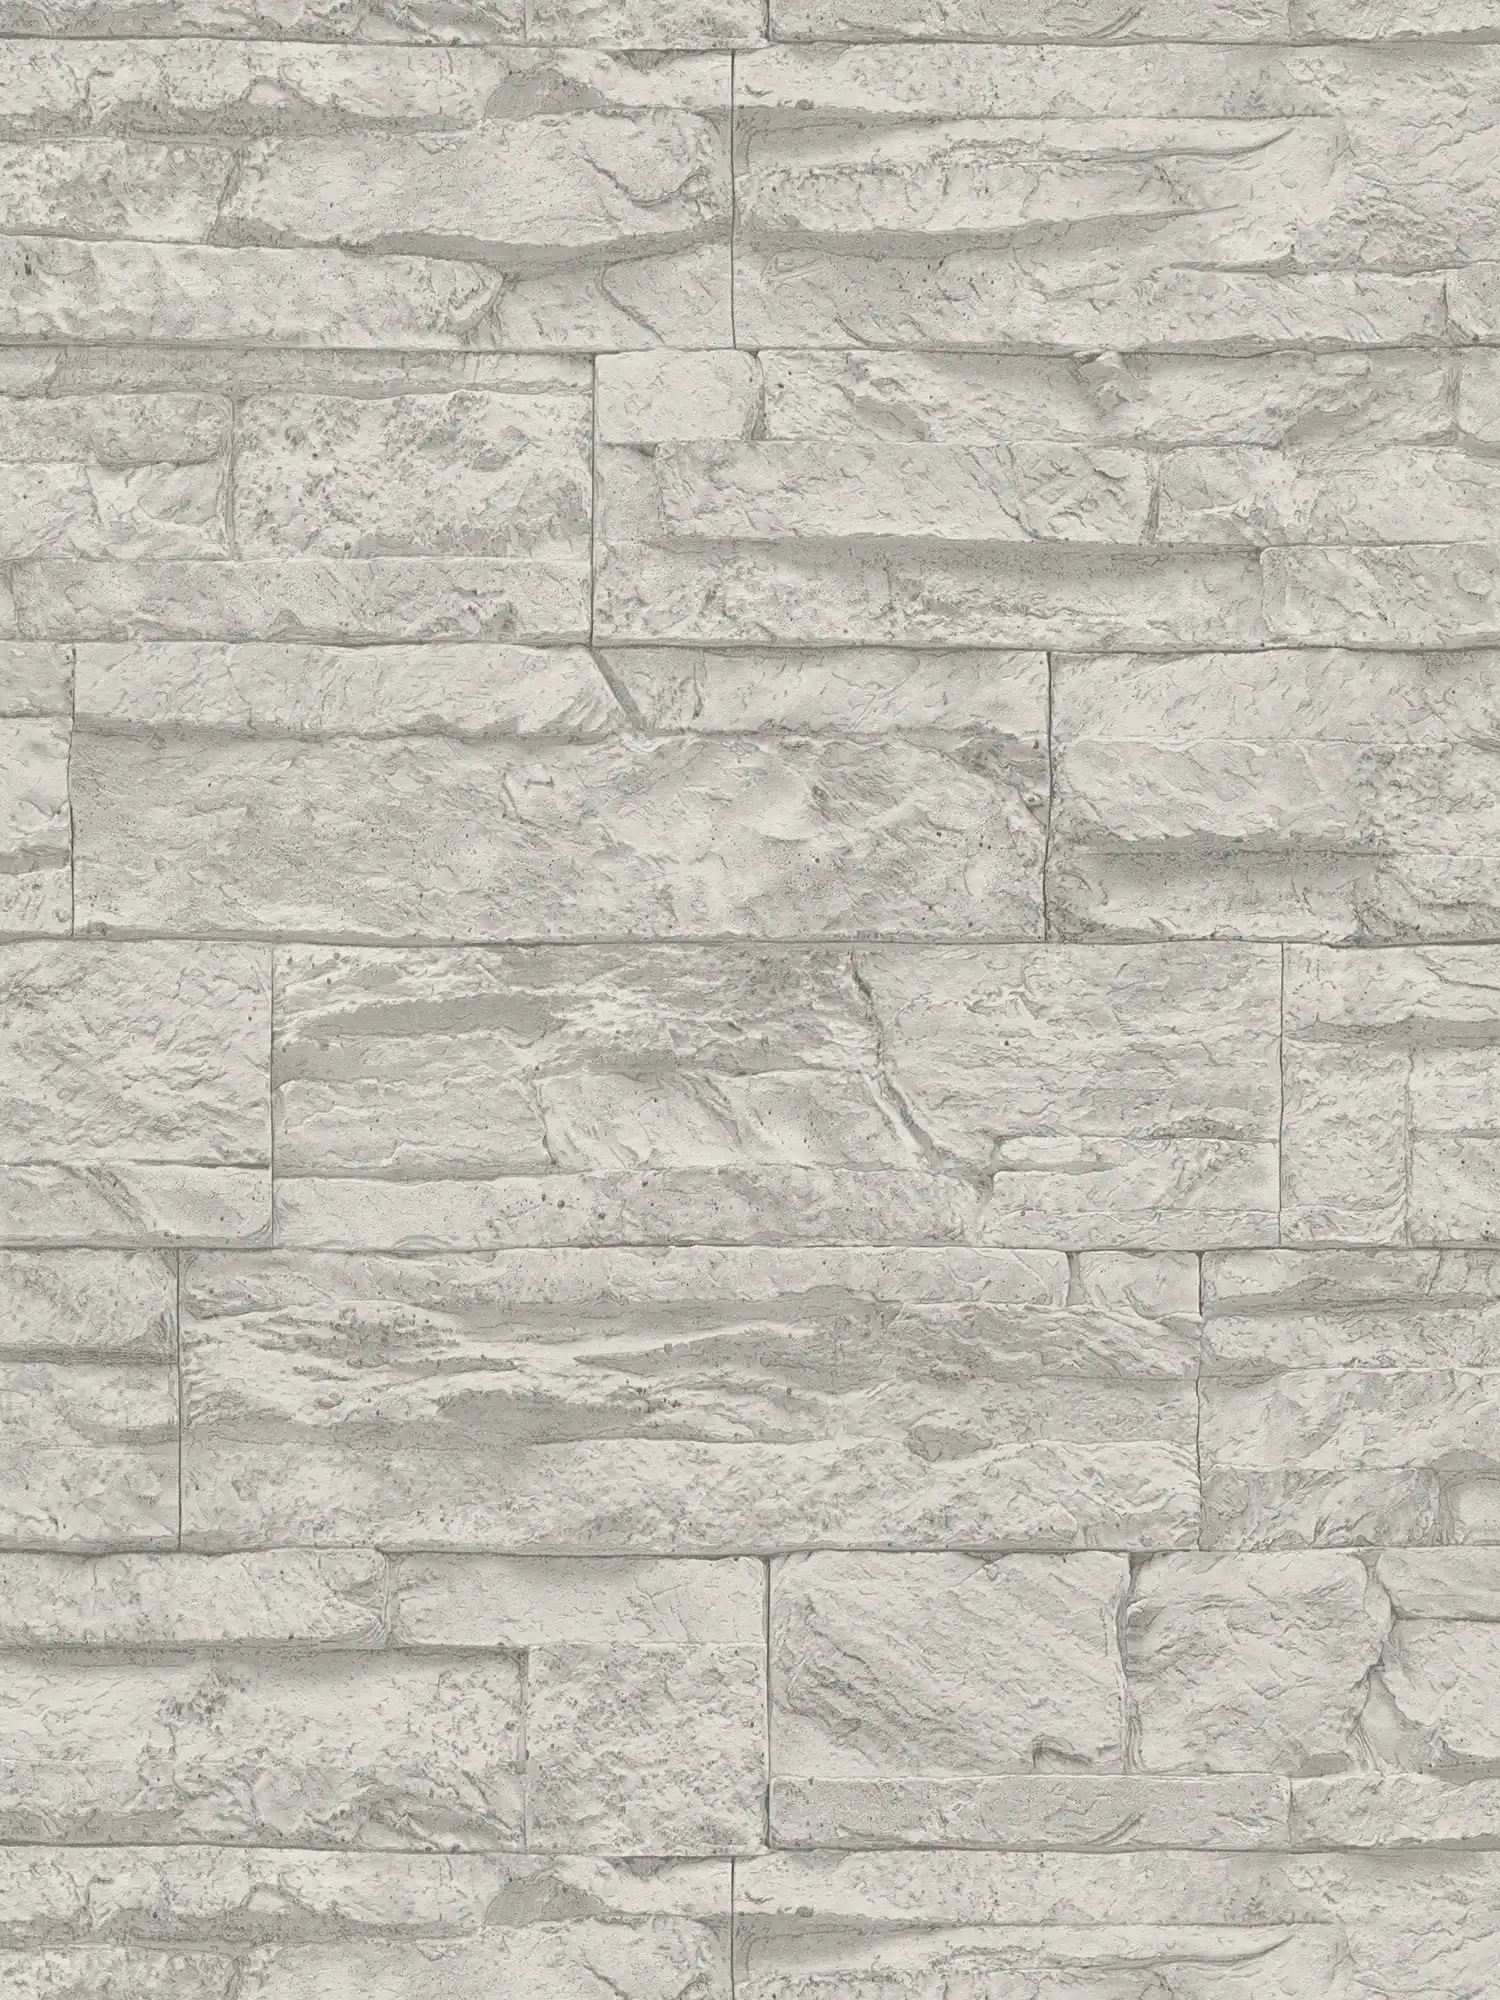 Tapete Natursteinoptik detailliert & realistisch – Grau, Weiß
